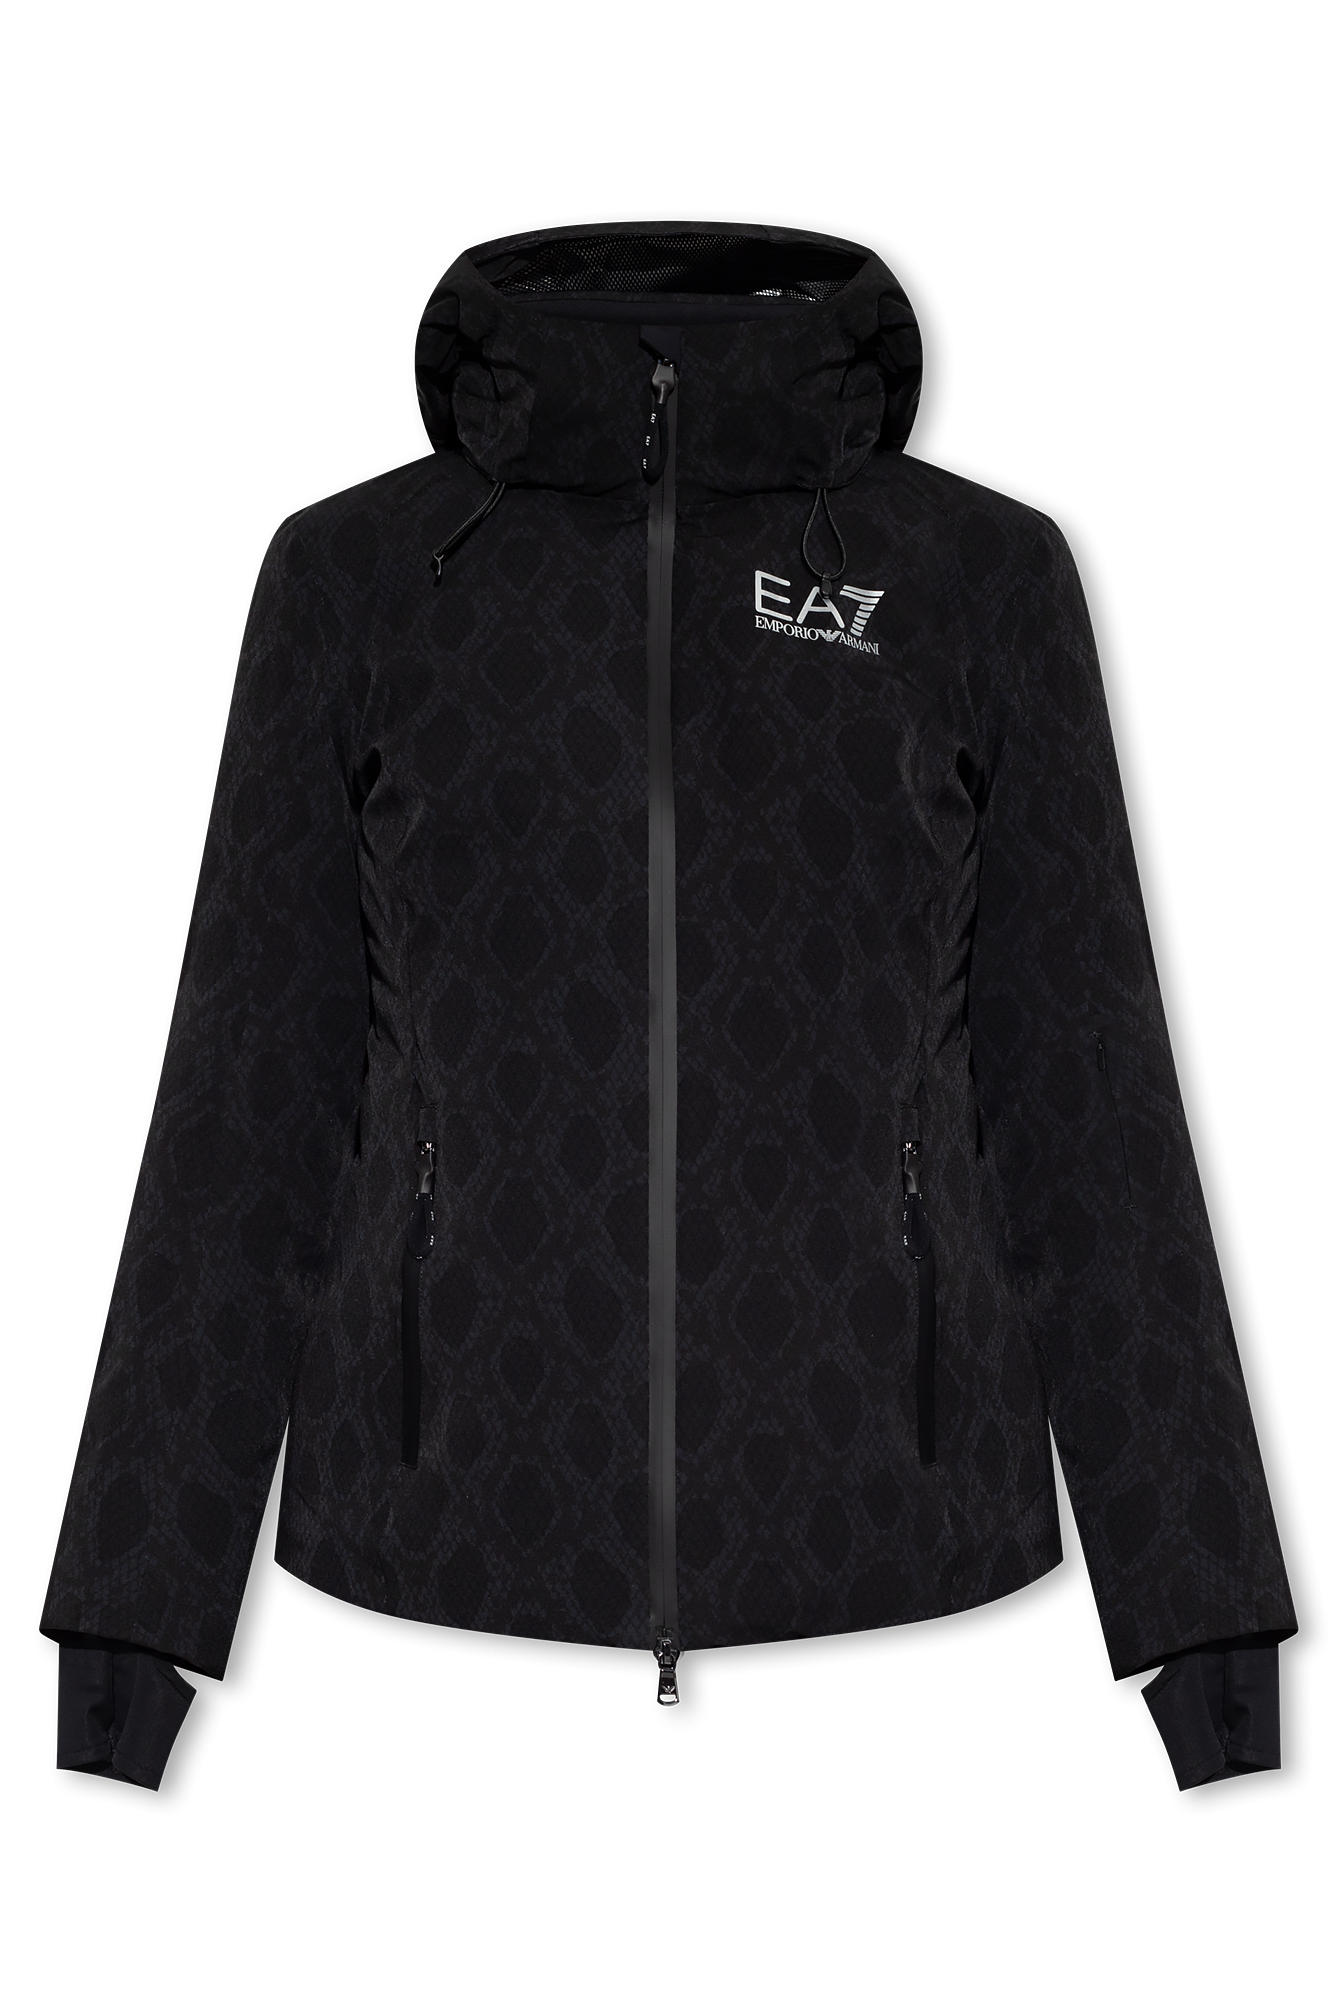 Ea7 Women's Jacket - Jackets & Coats